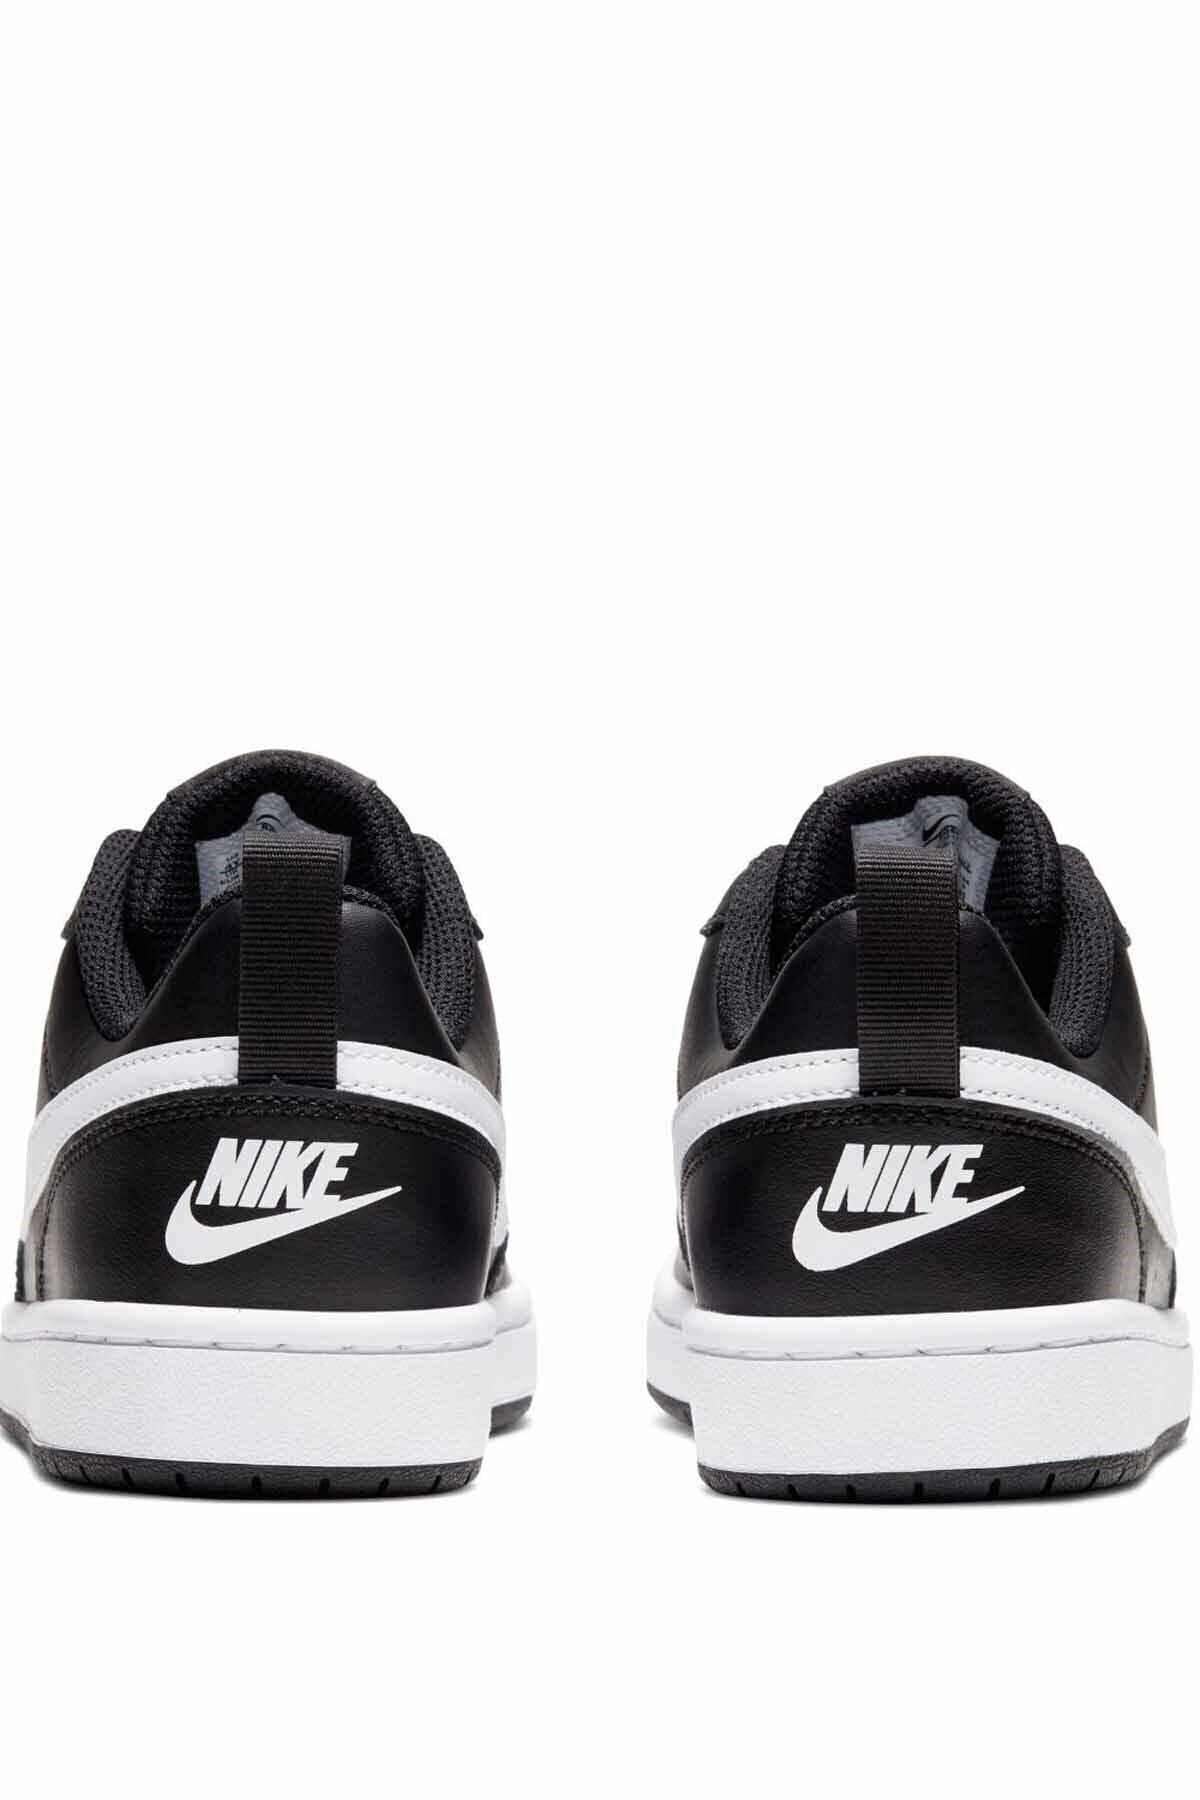 خرید پستی کفش مخصوص پیاده روی زنانه شیک شیک Nike اورجینال کد ty34595576